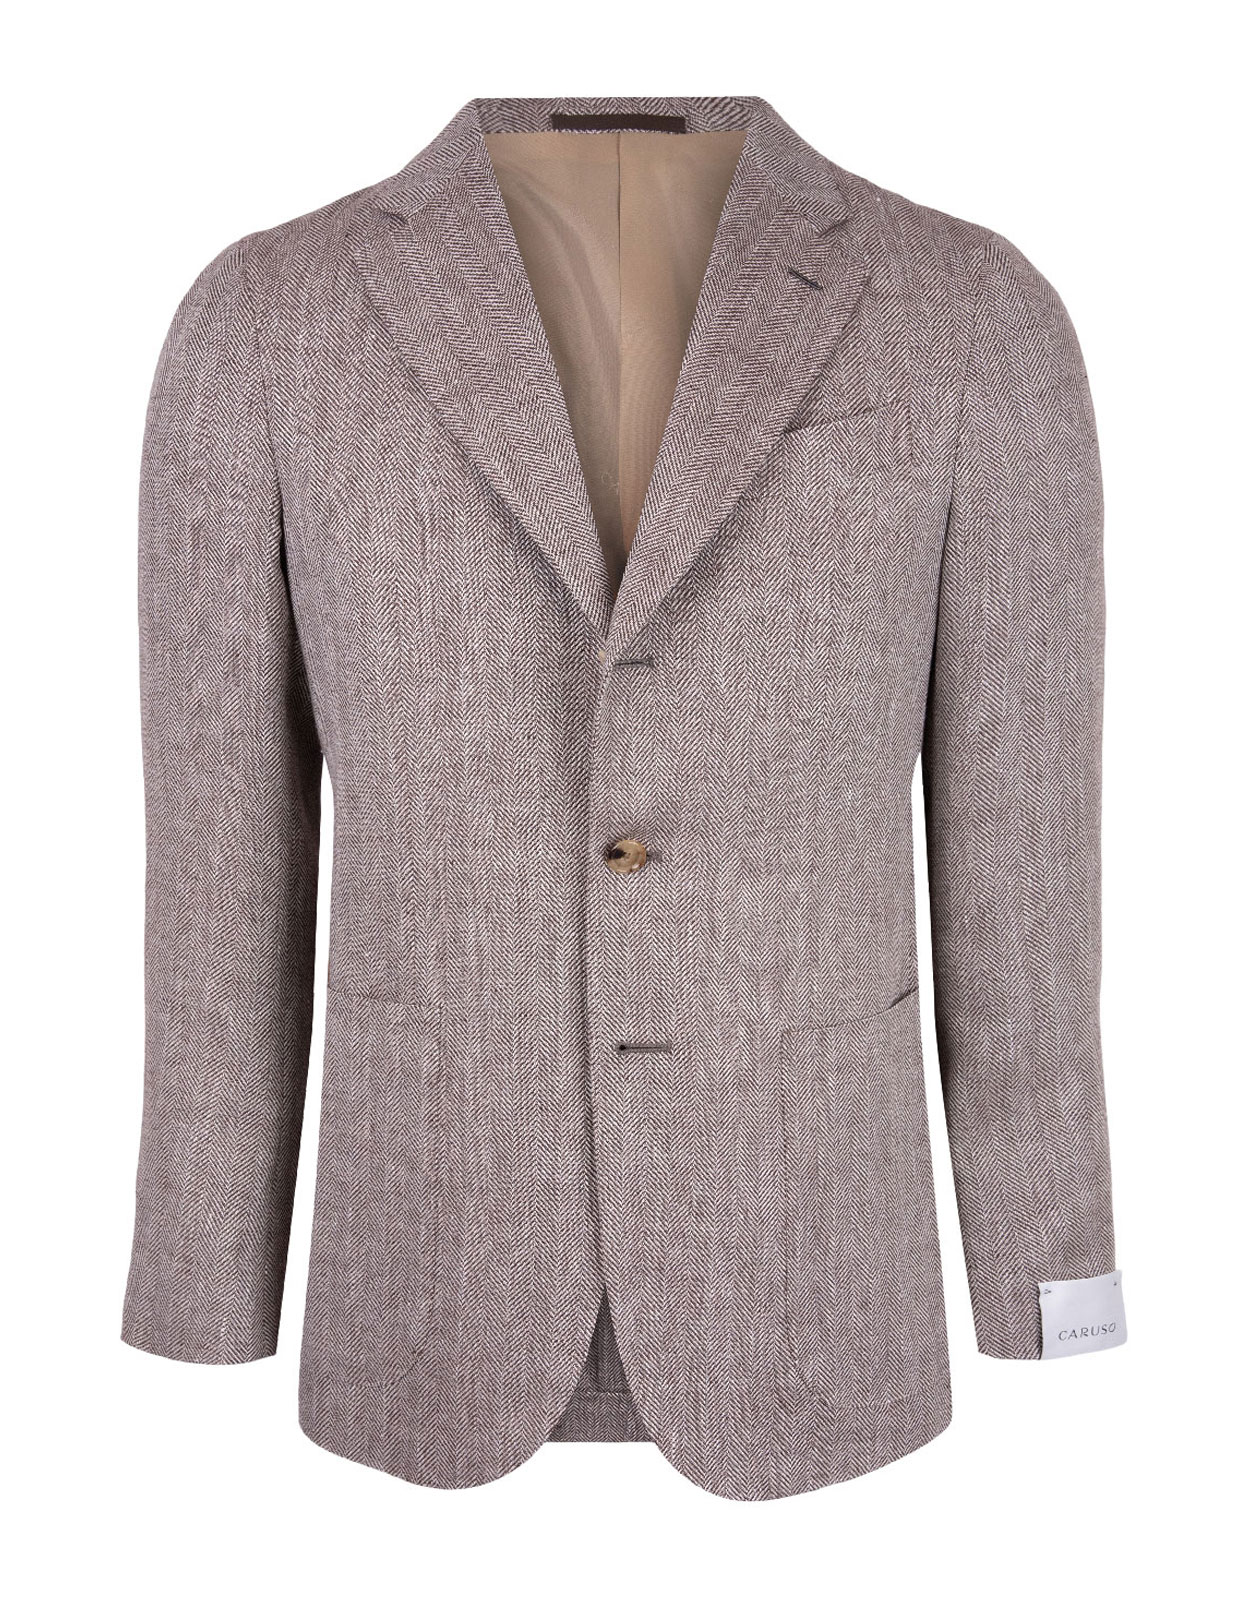 Tosca Jacket Linen Wool Herringbone Beige/Brown